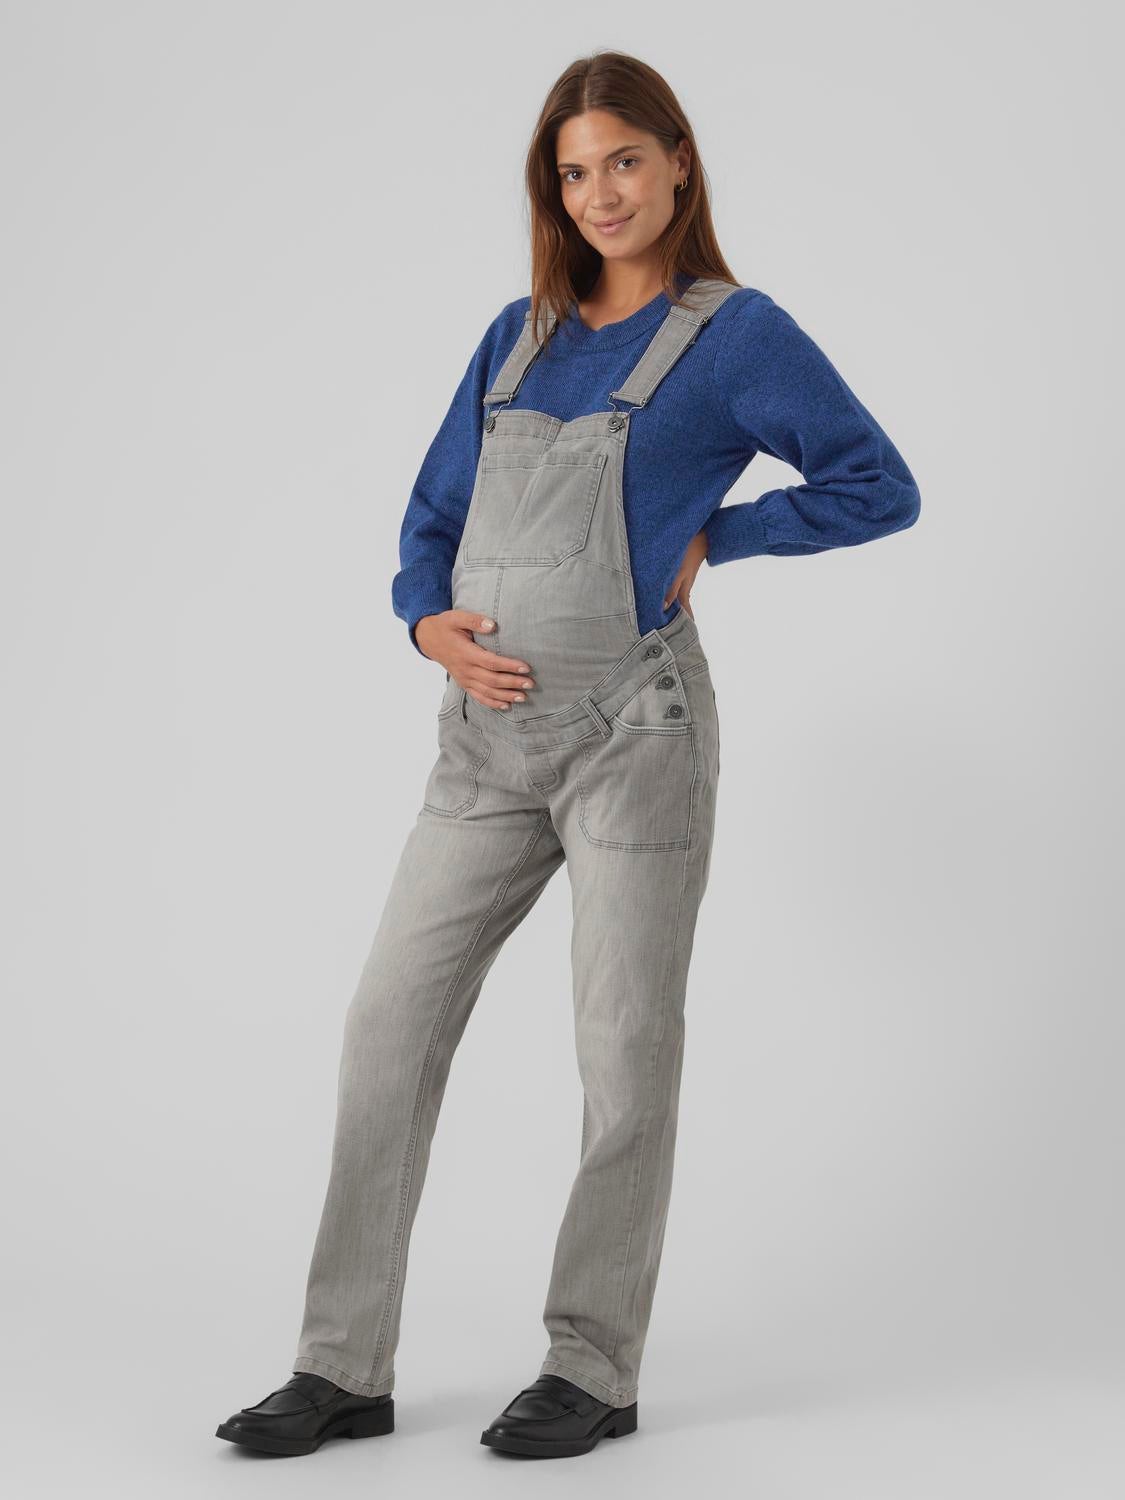 Salopette in jeans Straight Fit Tracolla singola staccabile con fibbia regolabile